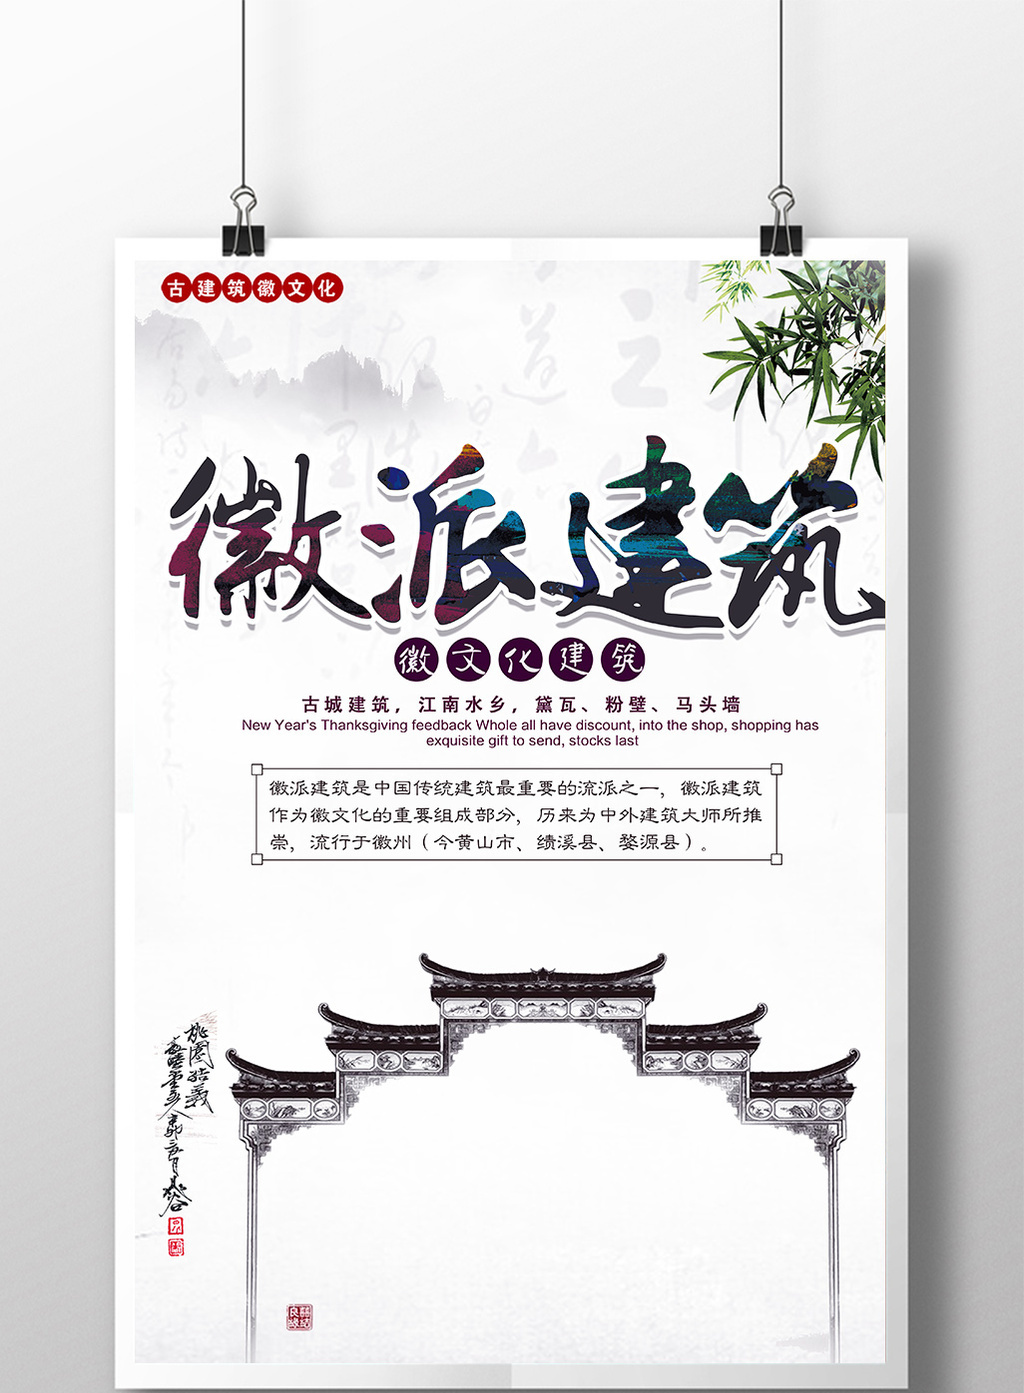 中国风徽派文化海报设计psd下载下载